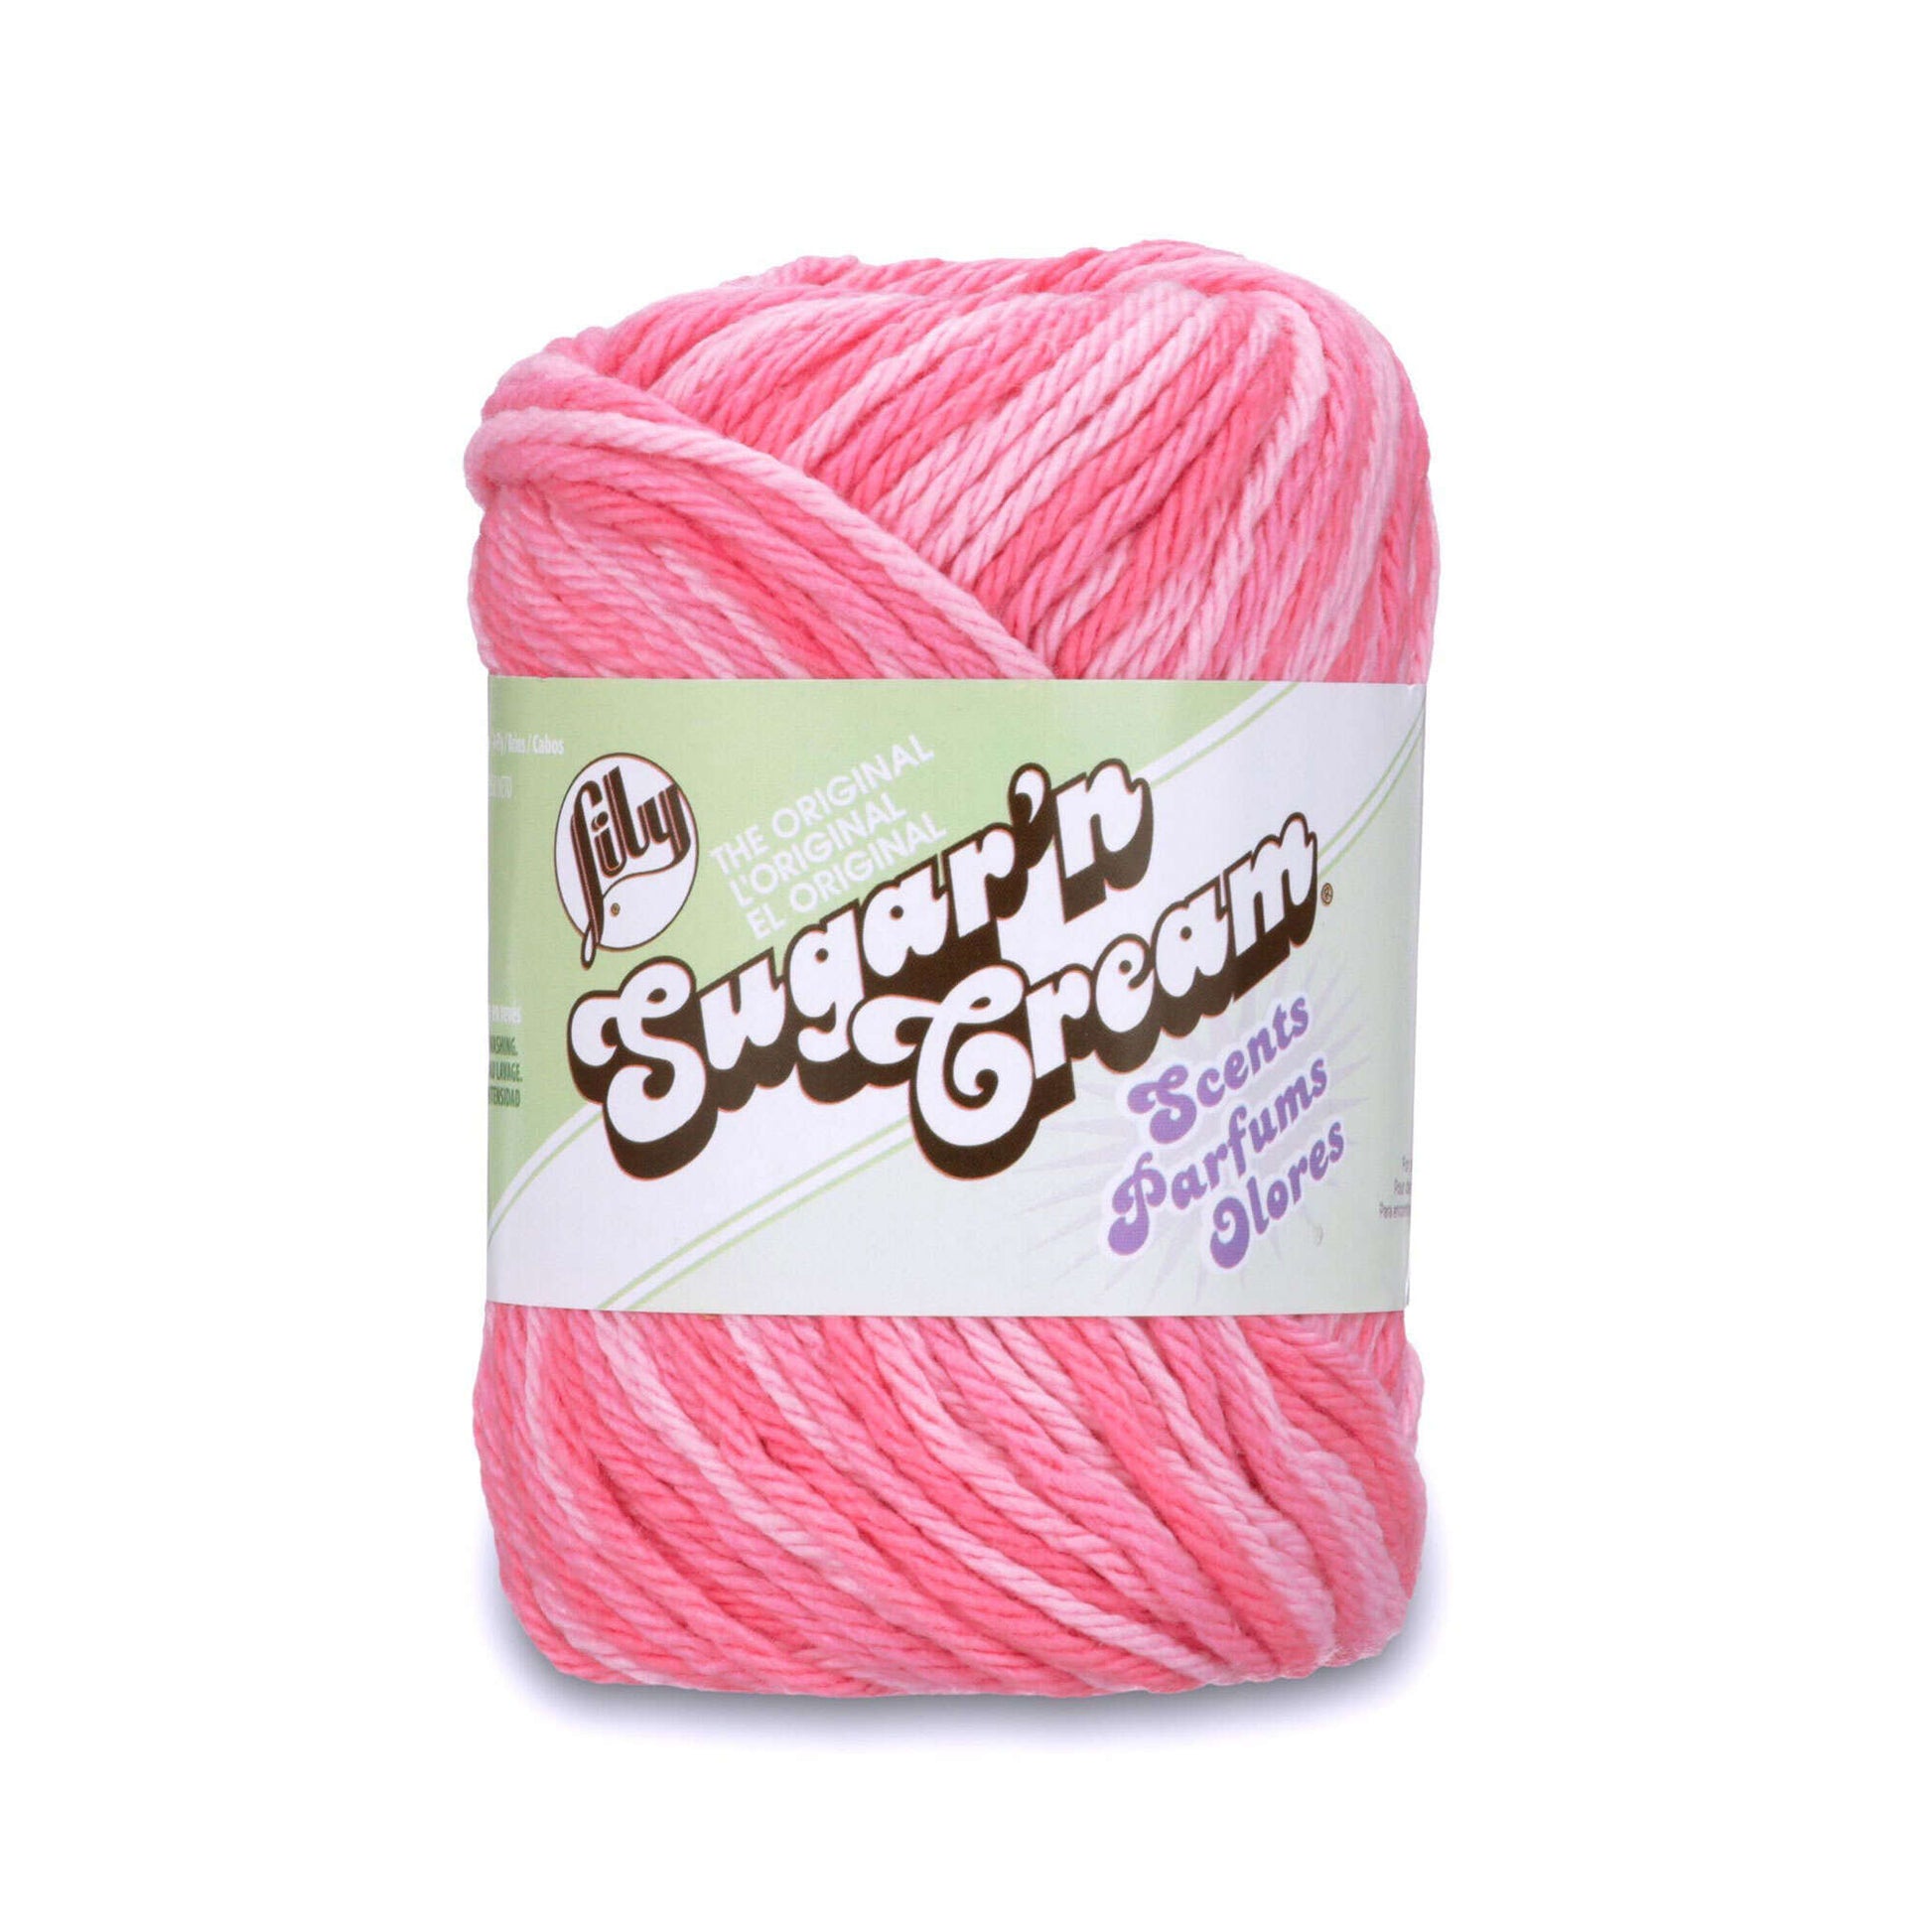 Lily Sugar'n Cream Scents Yarn - Discontinued Shades